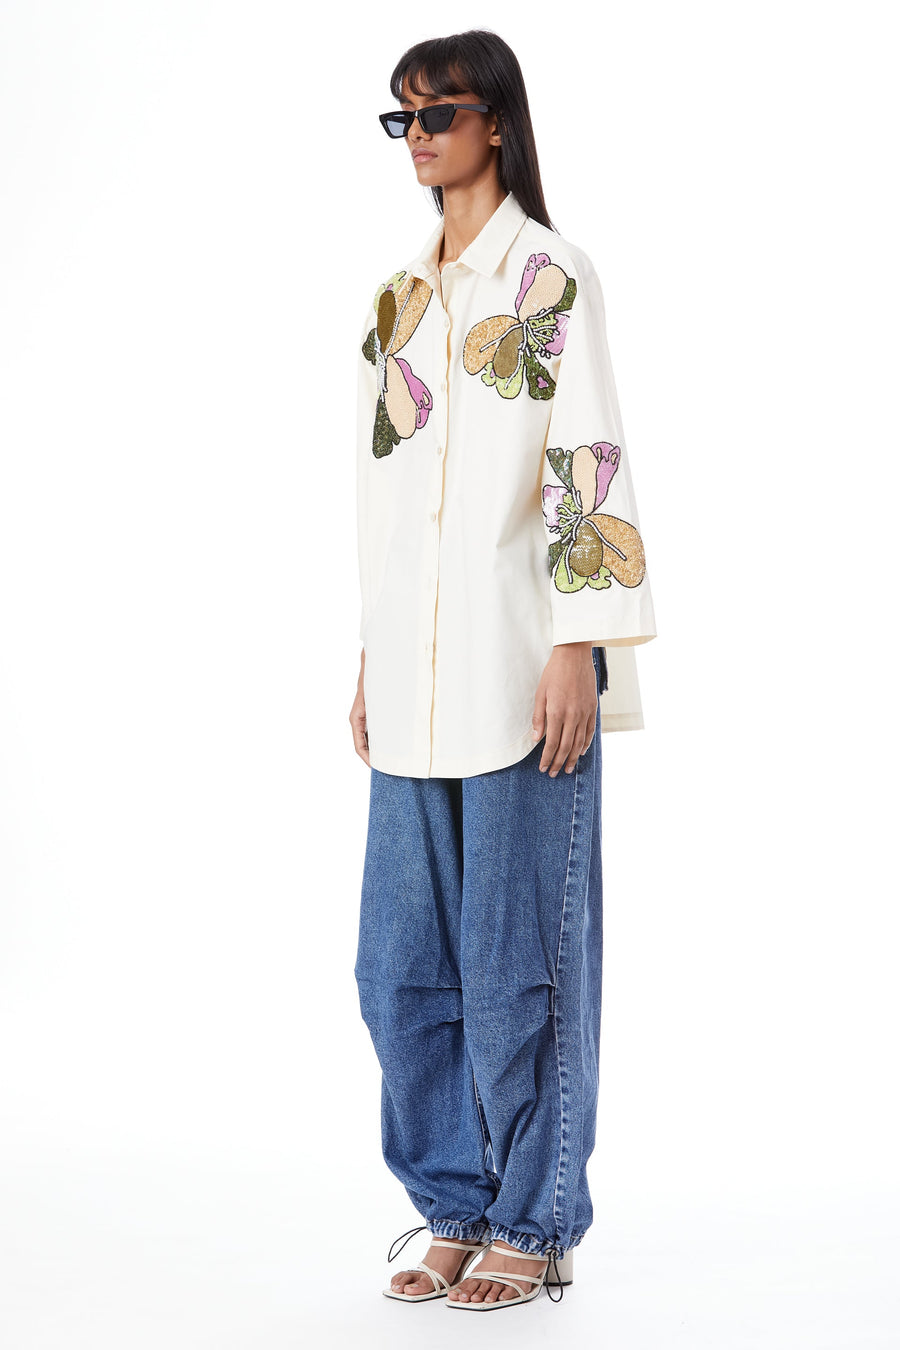 'Multi-Peony' Hand-Embellished Shirt - Kanika Goyal Label